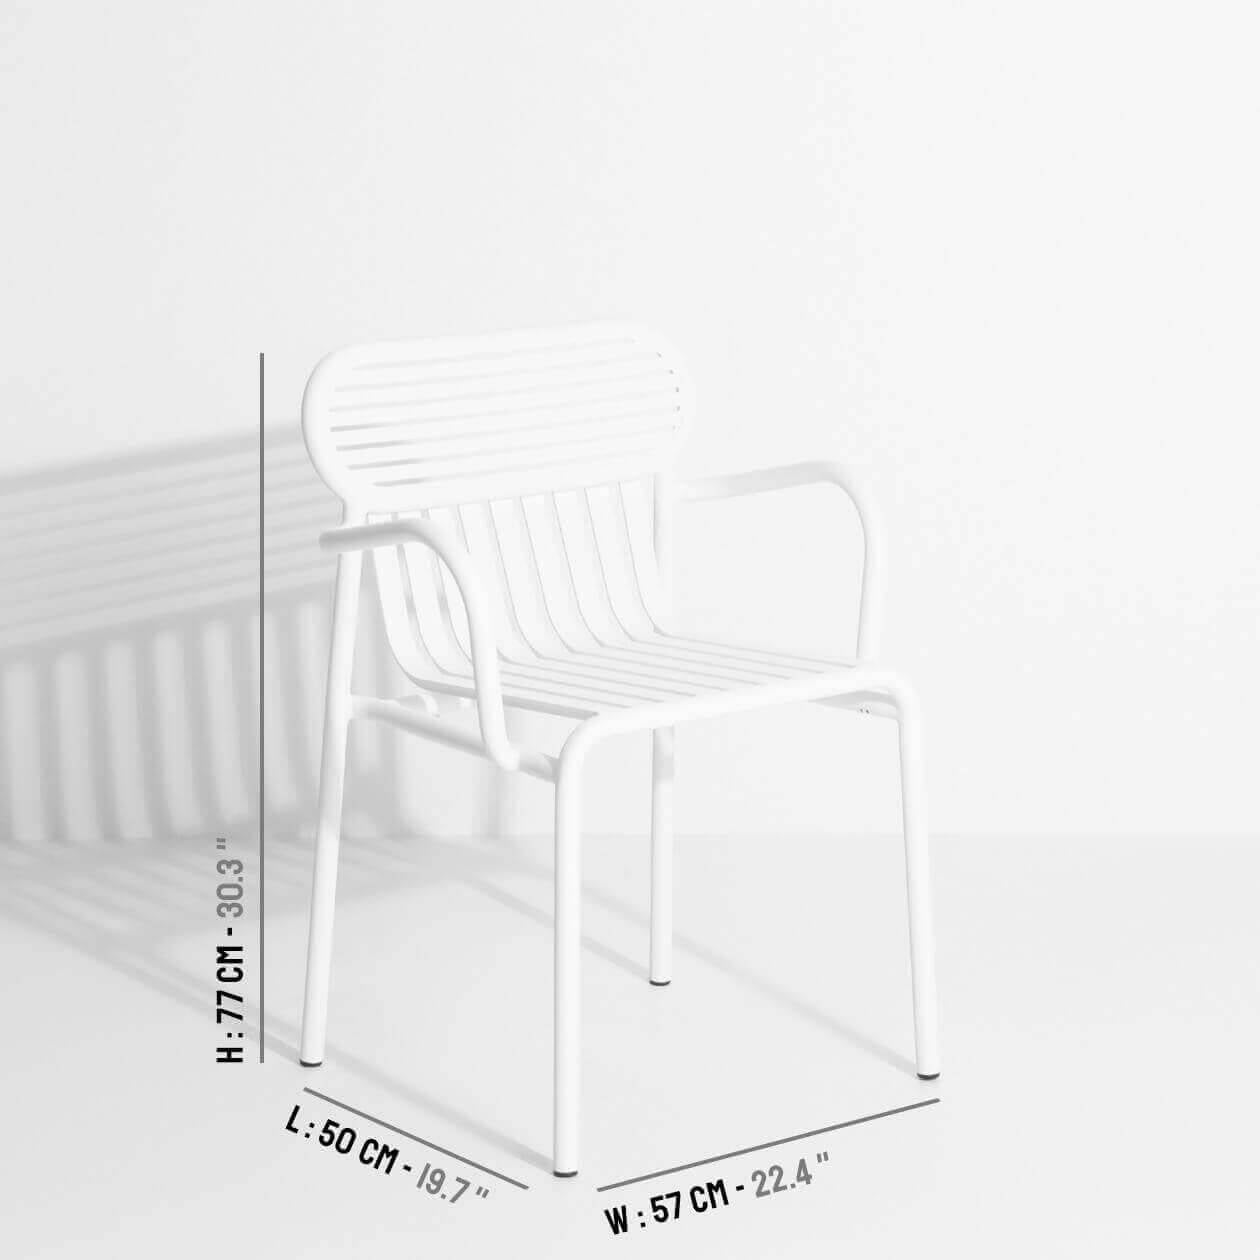 Week-End Gartenstuhl mit Armlehne in White präsentiert im Onlineshop von KAQTU Design AG. Gartenstuhl mit Armlehnen ist von Petite Friture